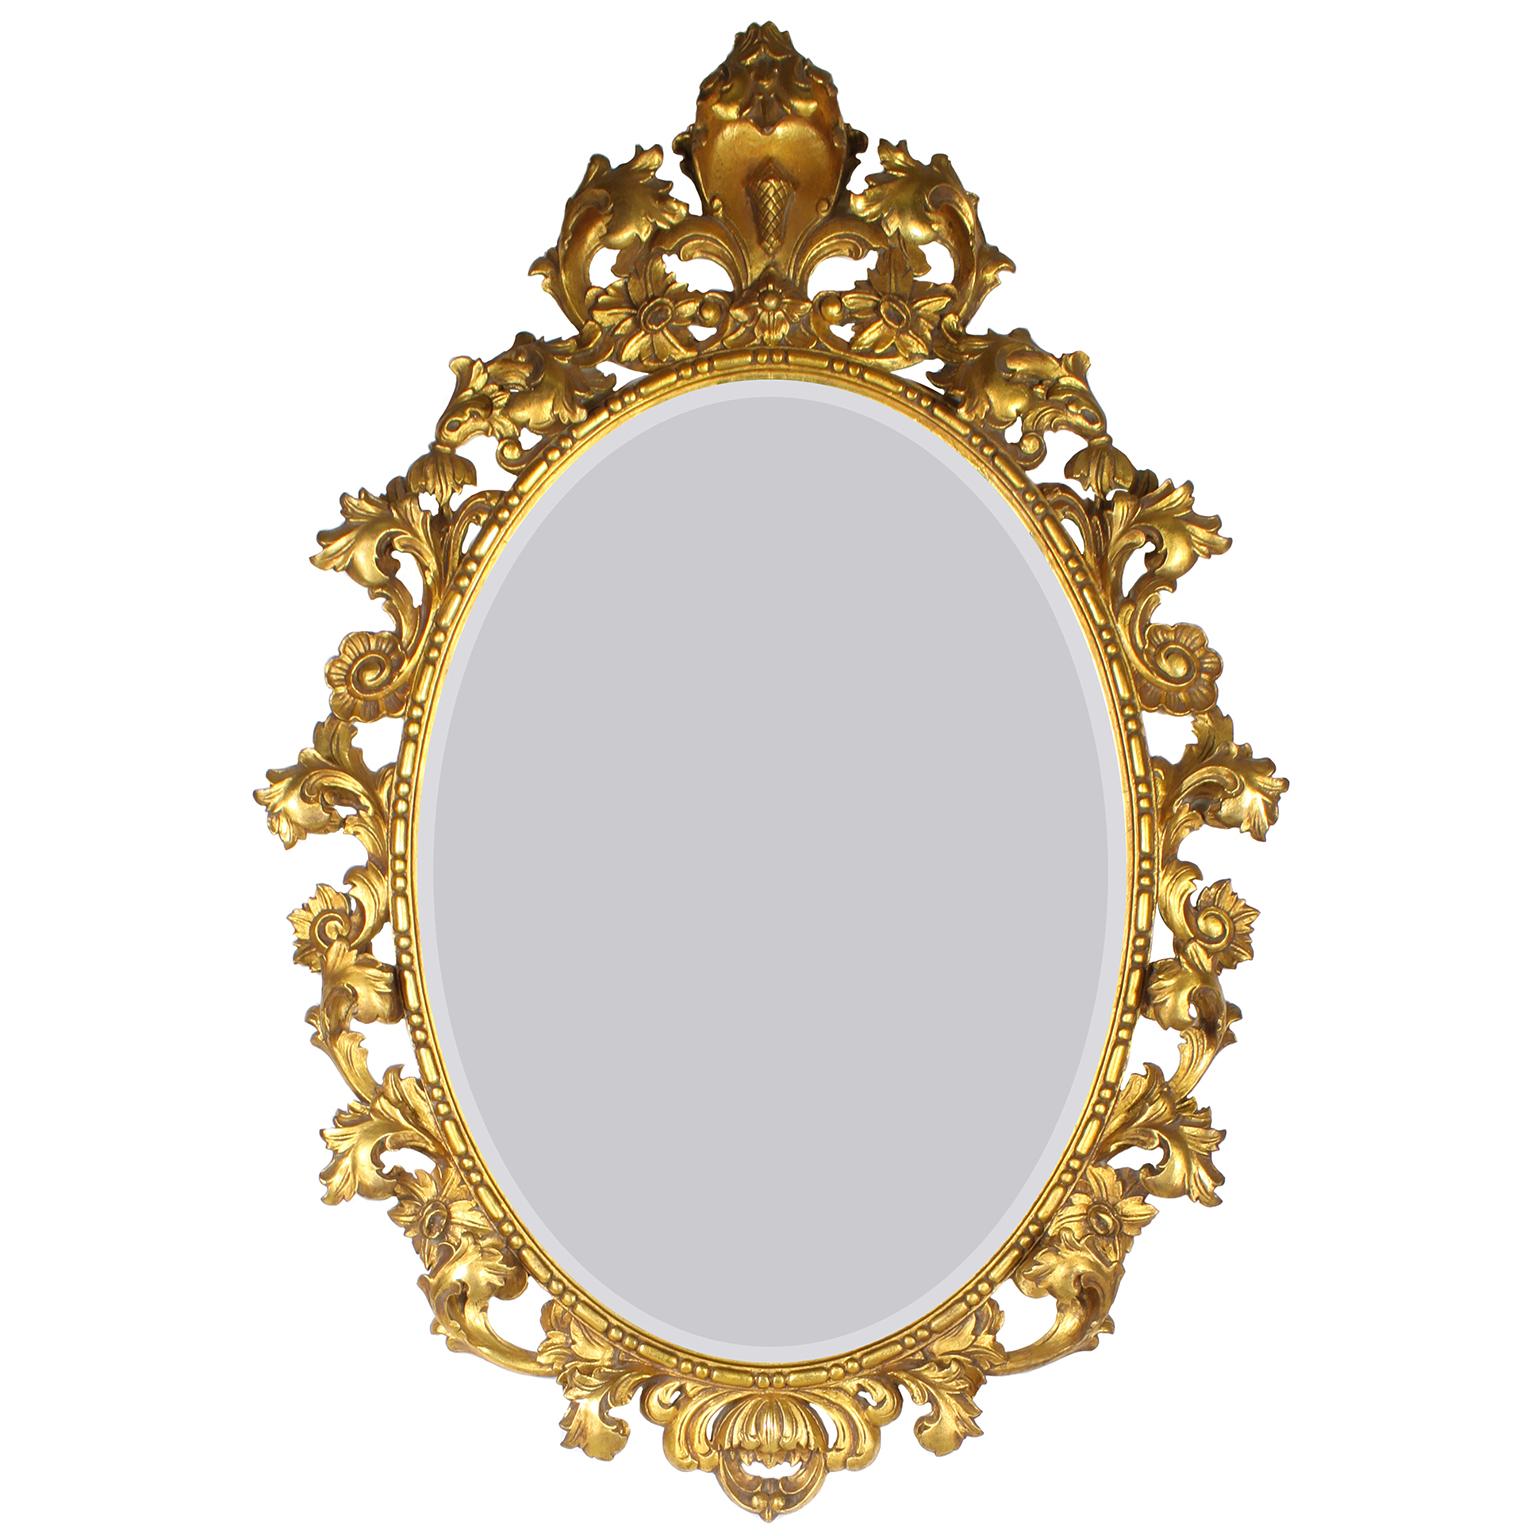 Eine italienische, vergoldete, holzgeschnitzte Spiegel- und Konsolengarnitur mit Marmorplatte. Der ovale Spiegelrahmen aus vergoldetem Holz ist mit einem floralen und verschnörkelten Akanthusmotiv verziert, mit einem Eichelschild gekrönt und mit